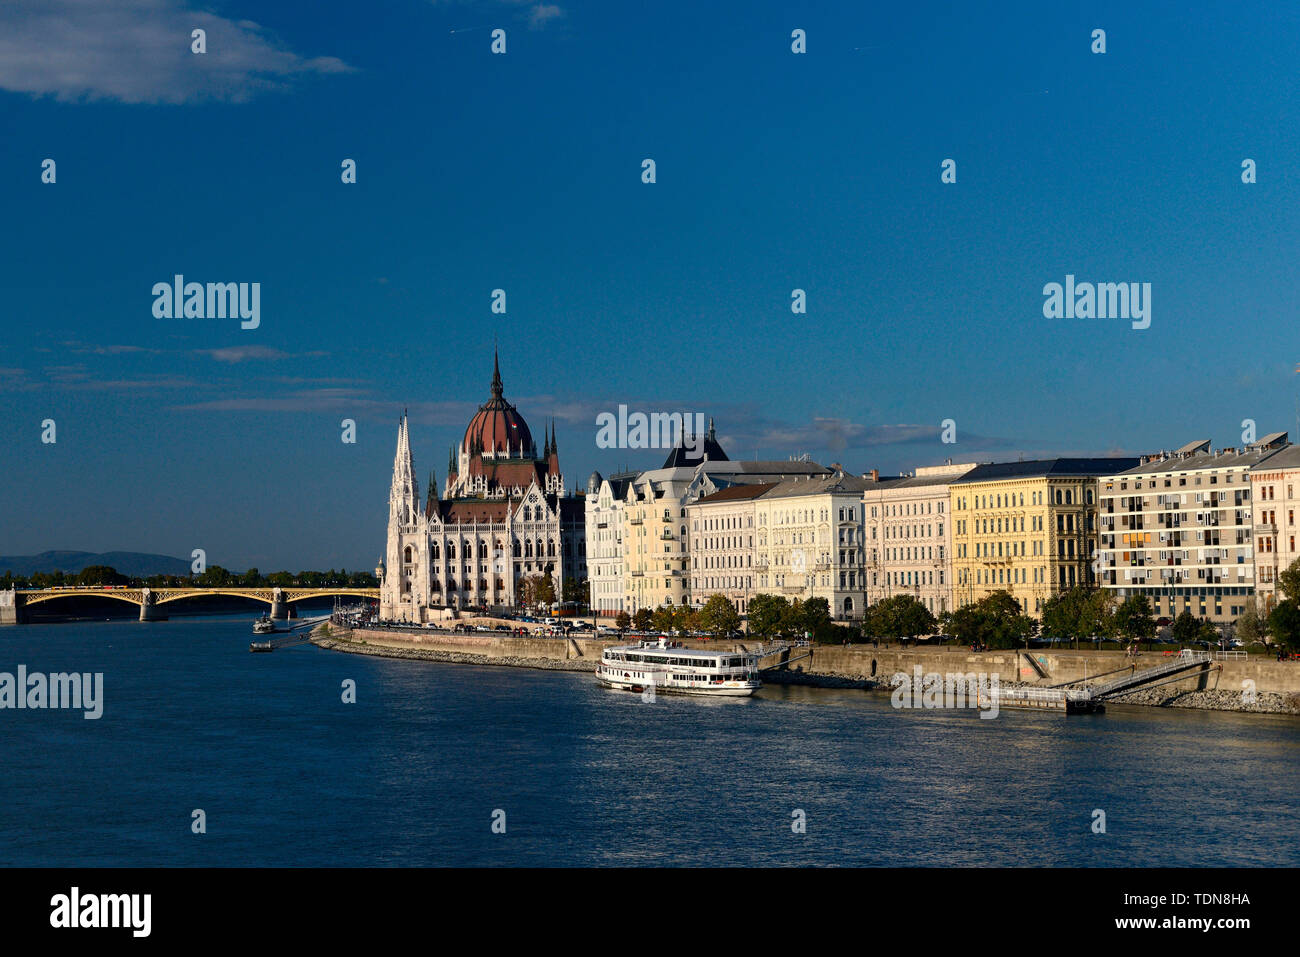 Blick ueber die Donau zum Parlament, Pest, Budapest, Ungarn, Europa Stock Photo